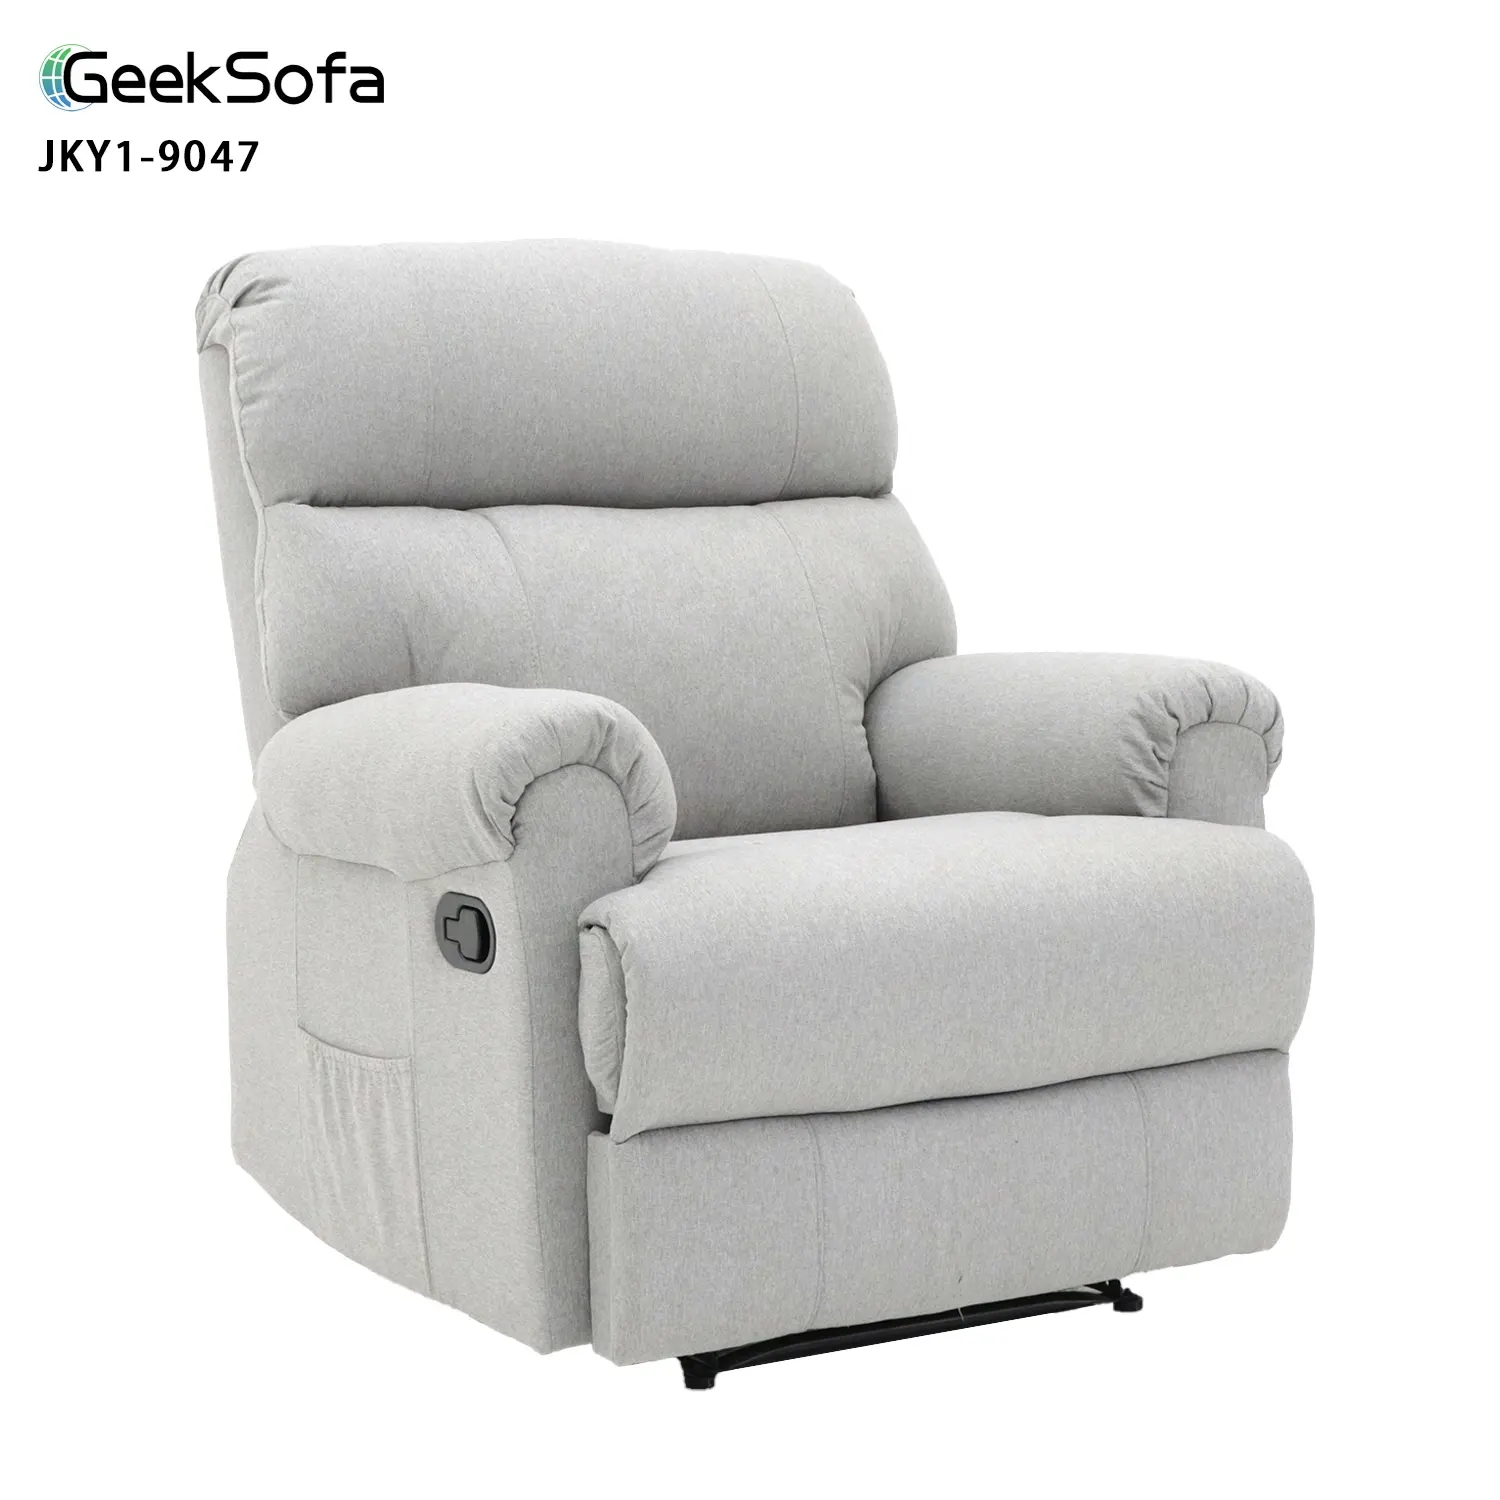 Geeksofa Cadeira reclinável manual para móveis de sala de estar, tecido de linho moderno para meninos preguiçosos, atacado de fábrica